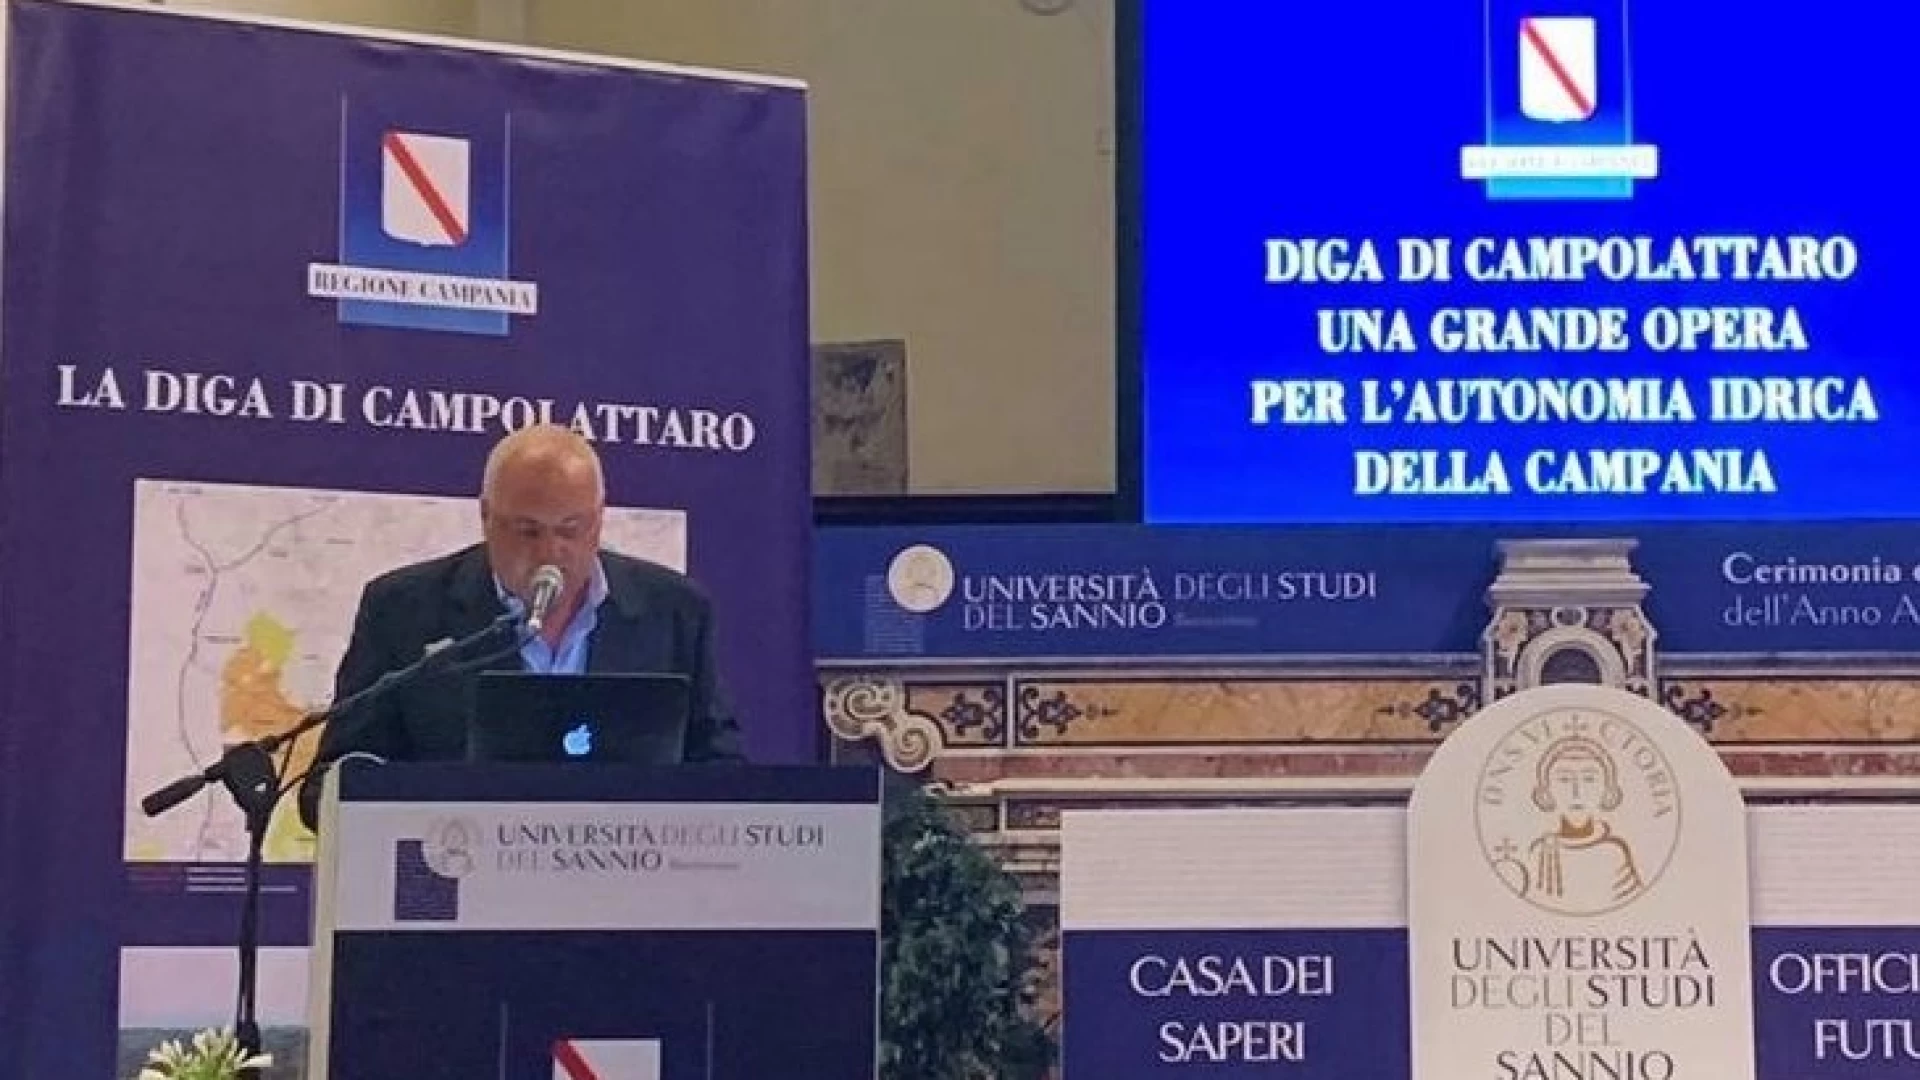 Diga di Campolattaro: la Regione Campania ha approvato il progetto di fattibilità del valore di 480 milioni di euro